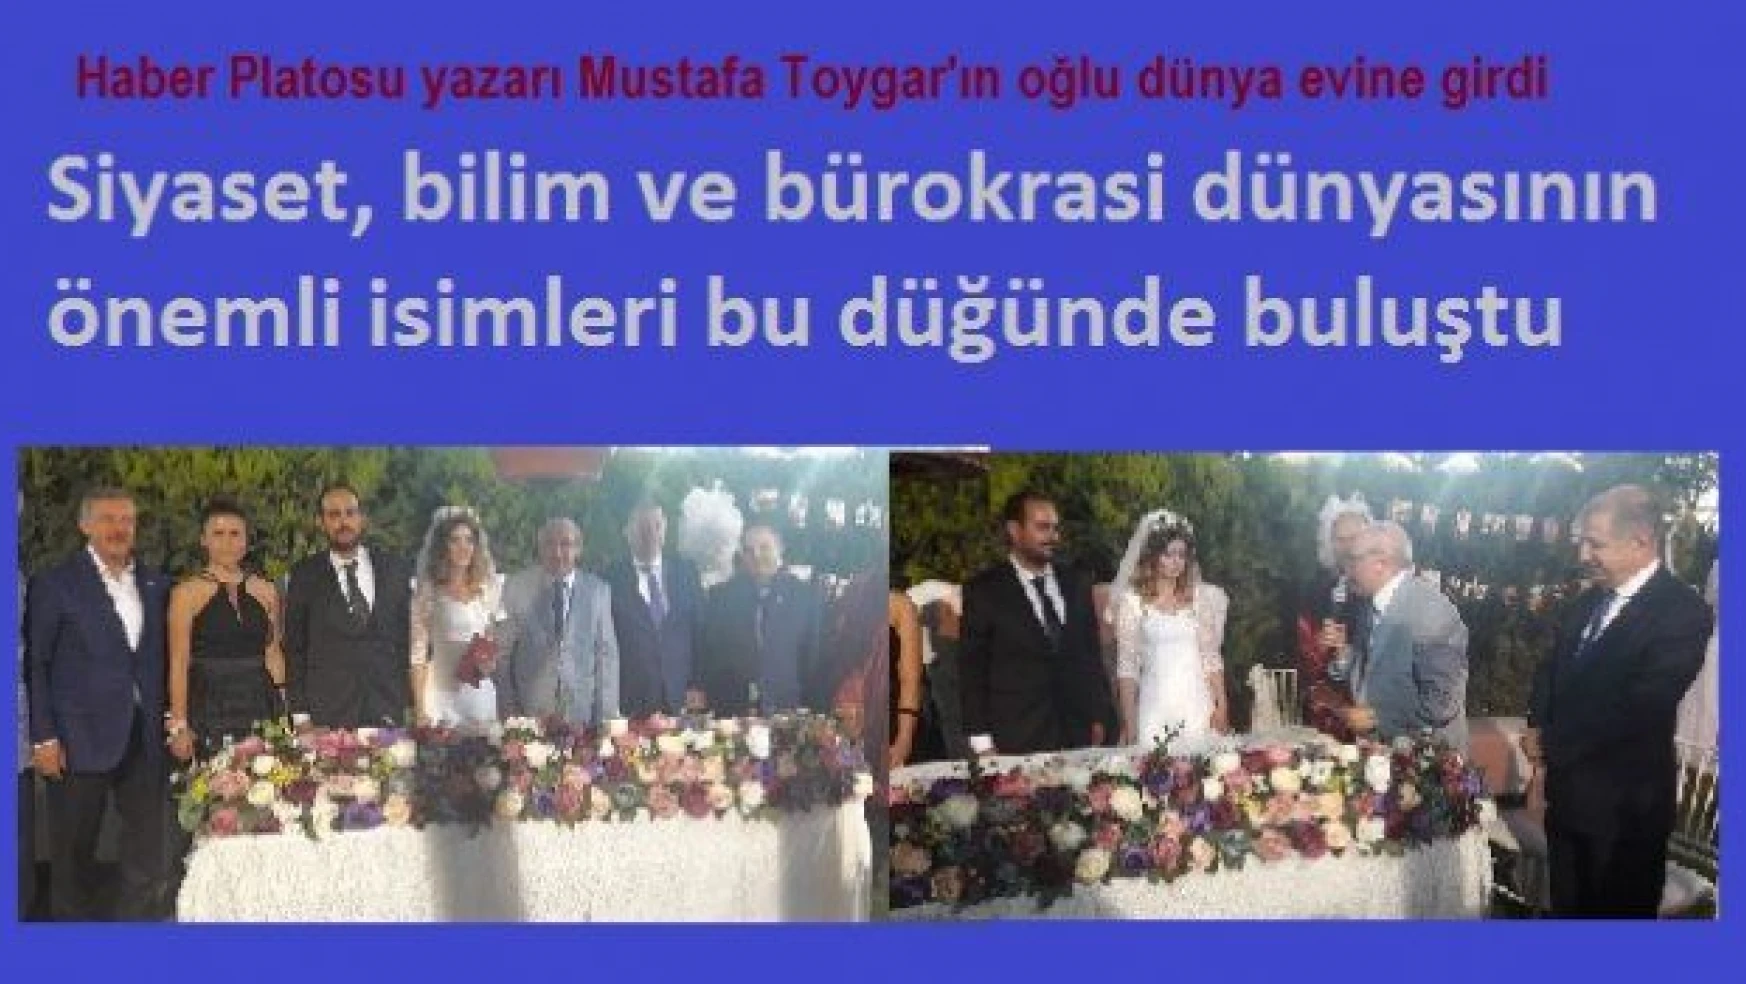 Ünlü isimler Mustafa Toygar'ın oğlunun düğününde buluştu